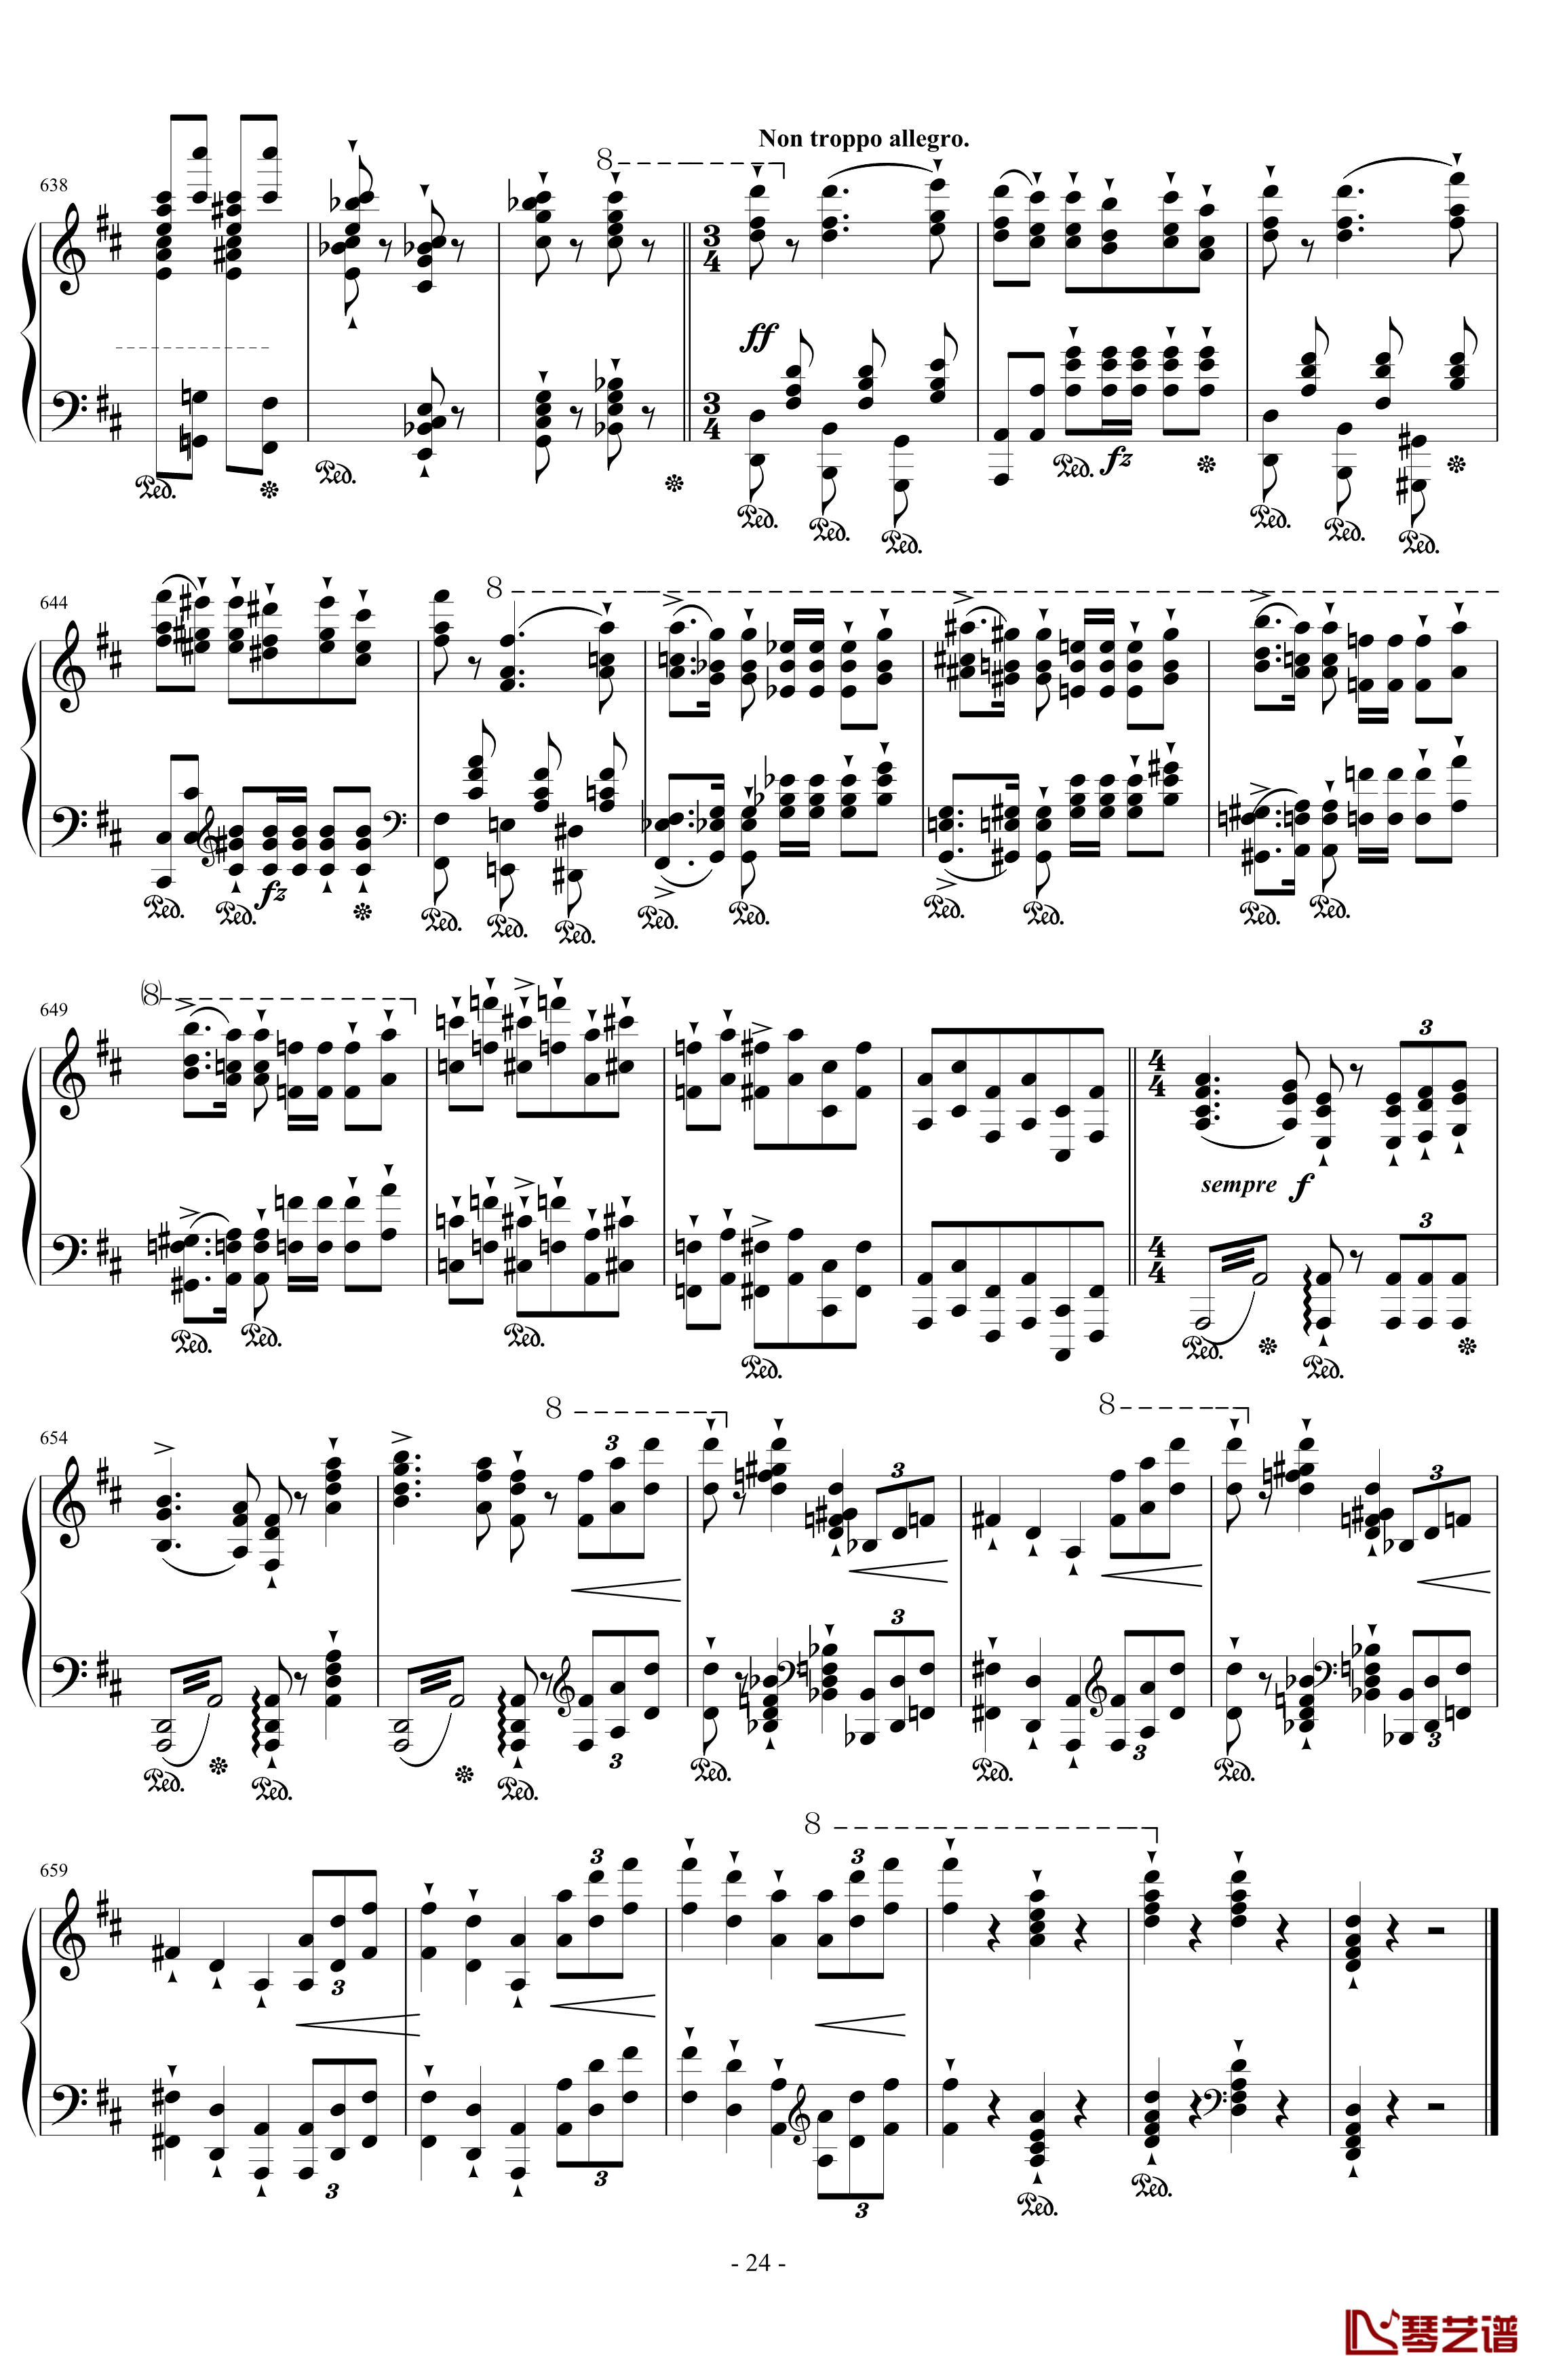 西班牙狂想曲钢琴谱-难度极高的炫技大作-李斯特24